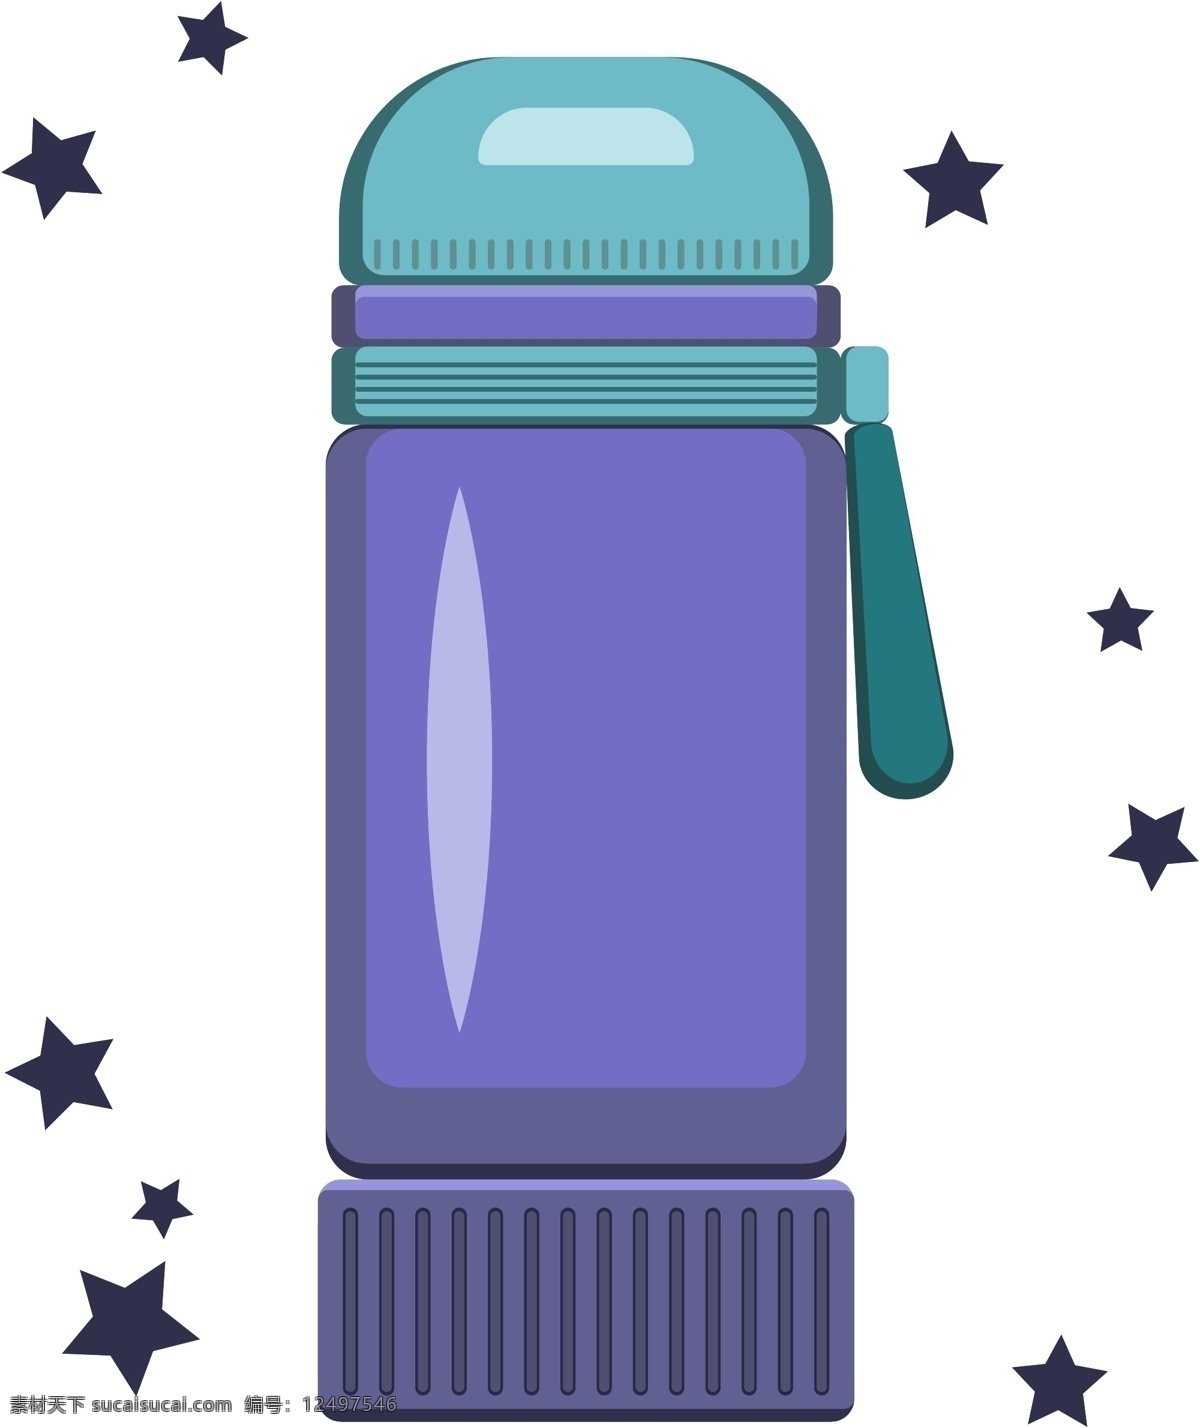 暖水瓶 保温杯 生活用品 设计元素 蓝紫色 可爱卡通